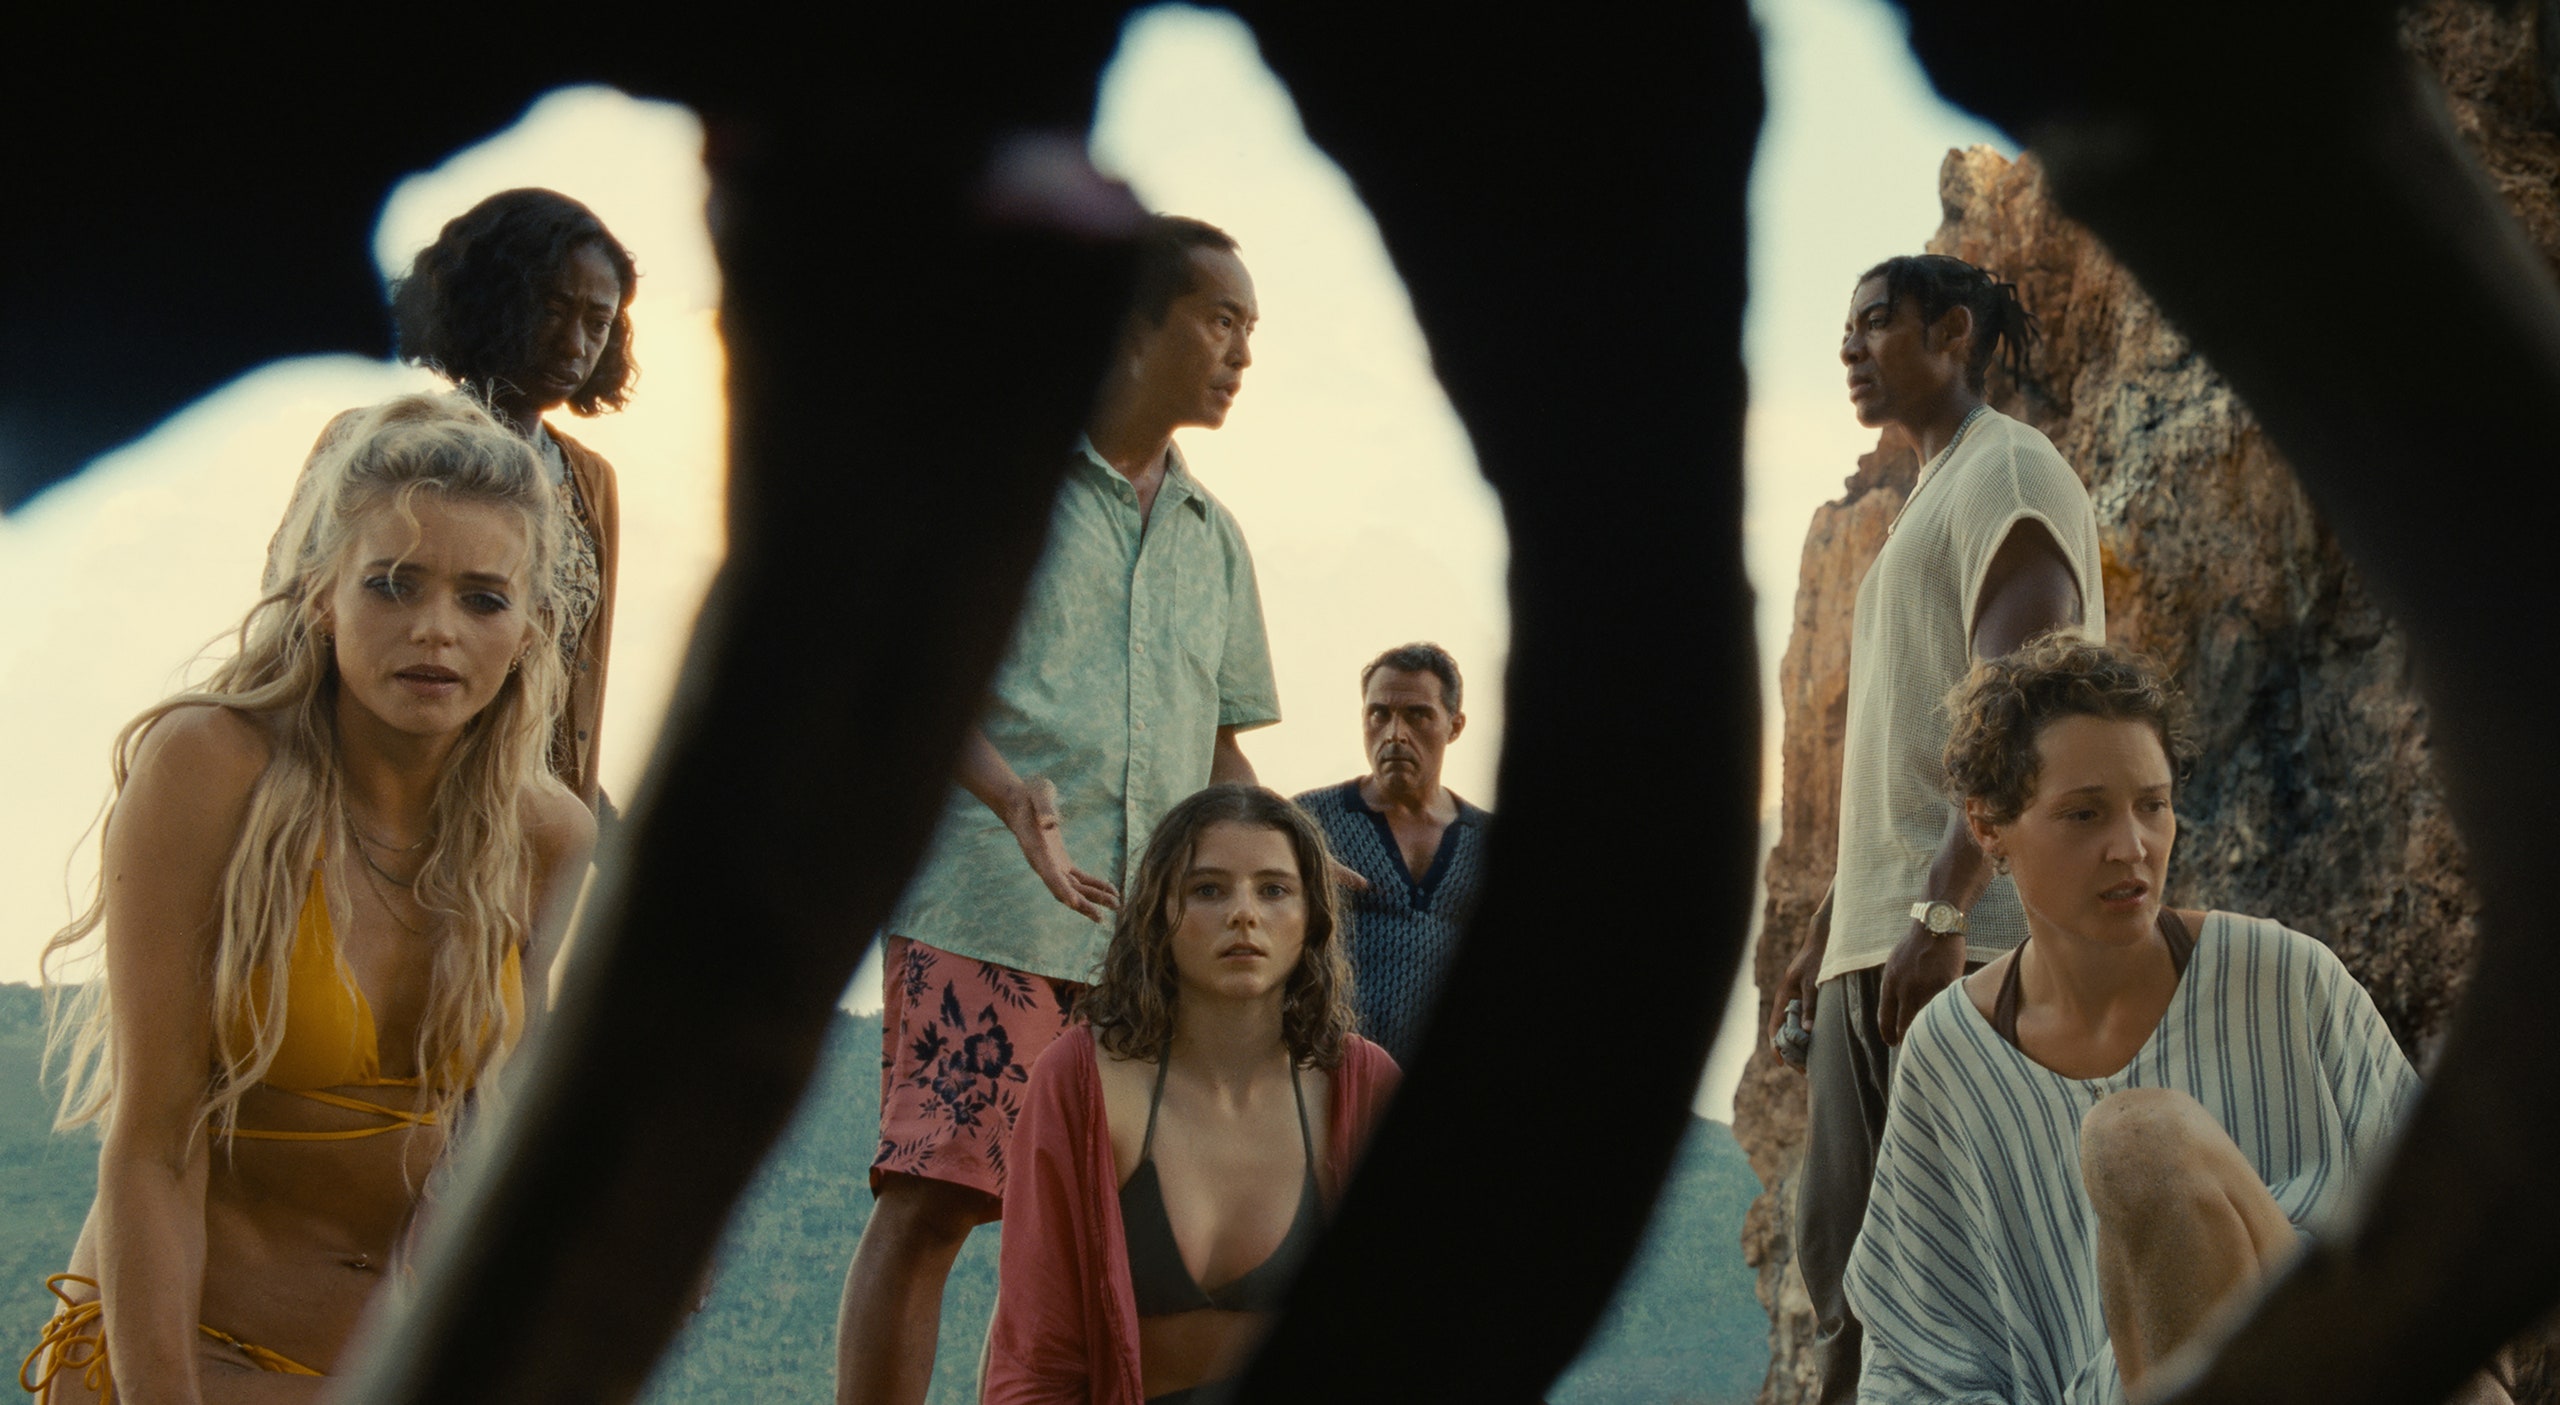 Cena do filme Tempo exibe sete pessoas numa praia, quatro mulheres e três homens. As mulheres observam a ossada de um ser humano, enquanto dois homens discutem e o outro observa, ao fundo.